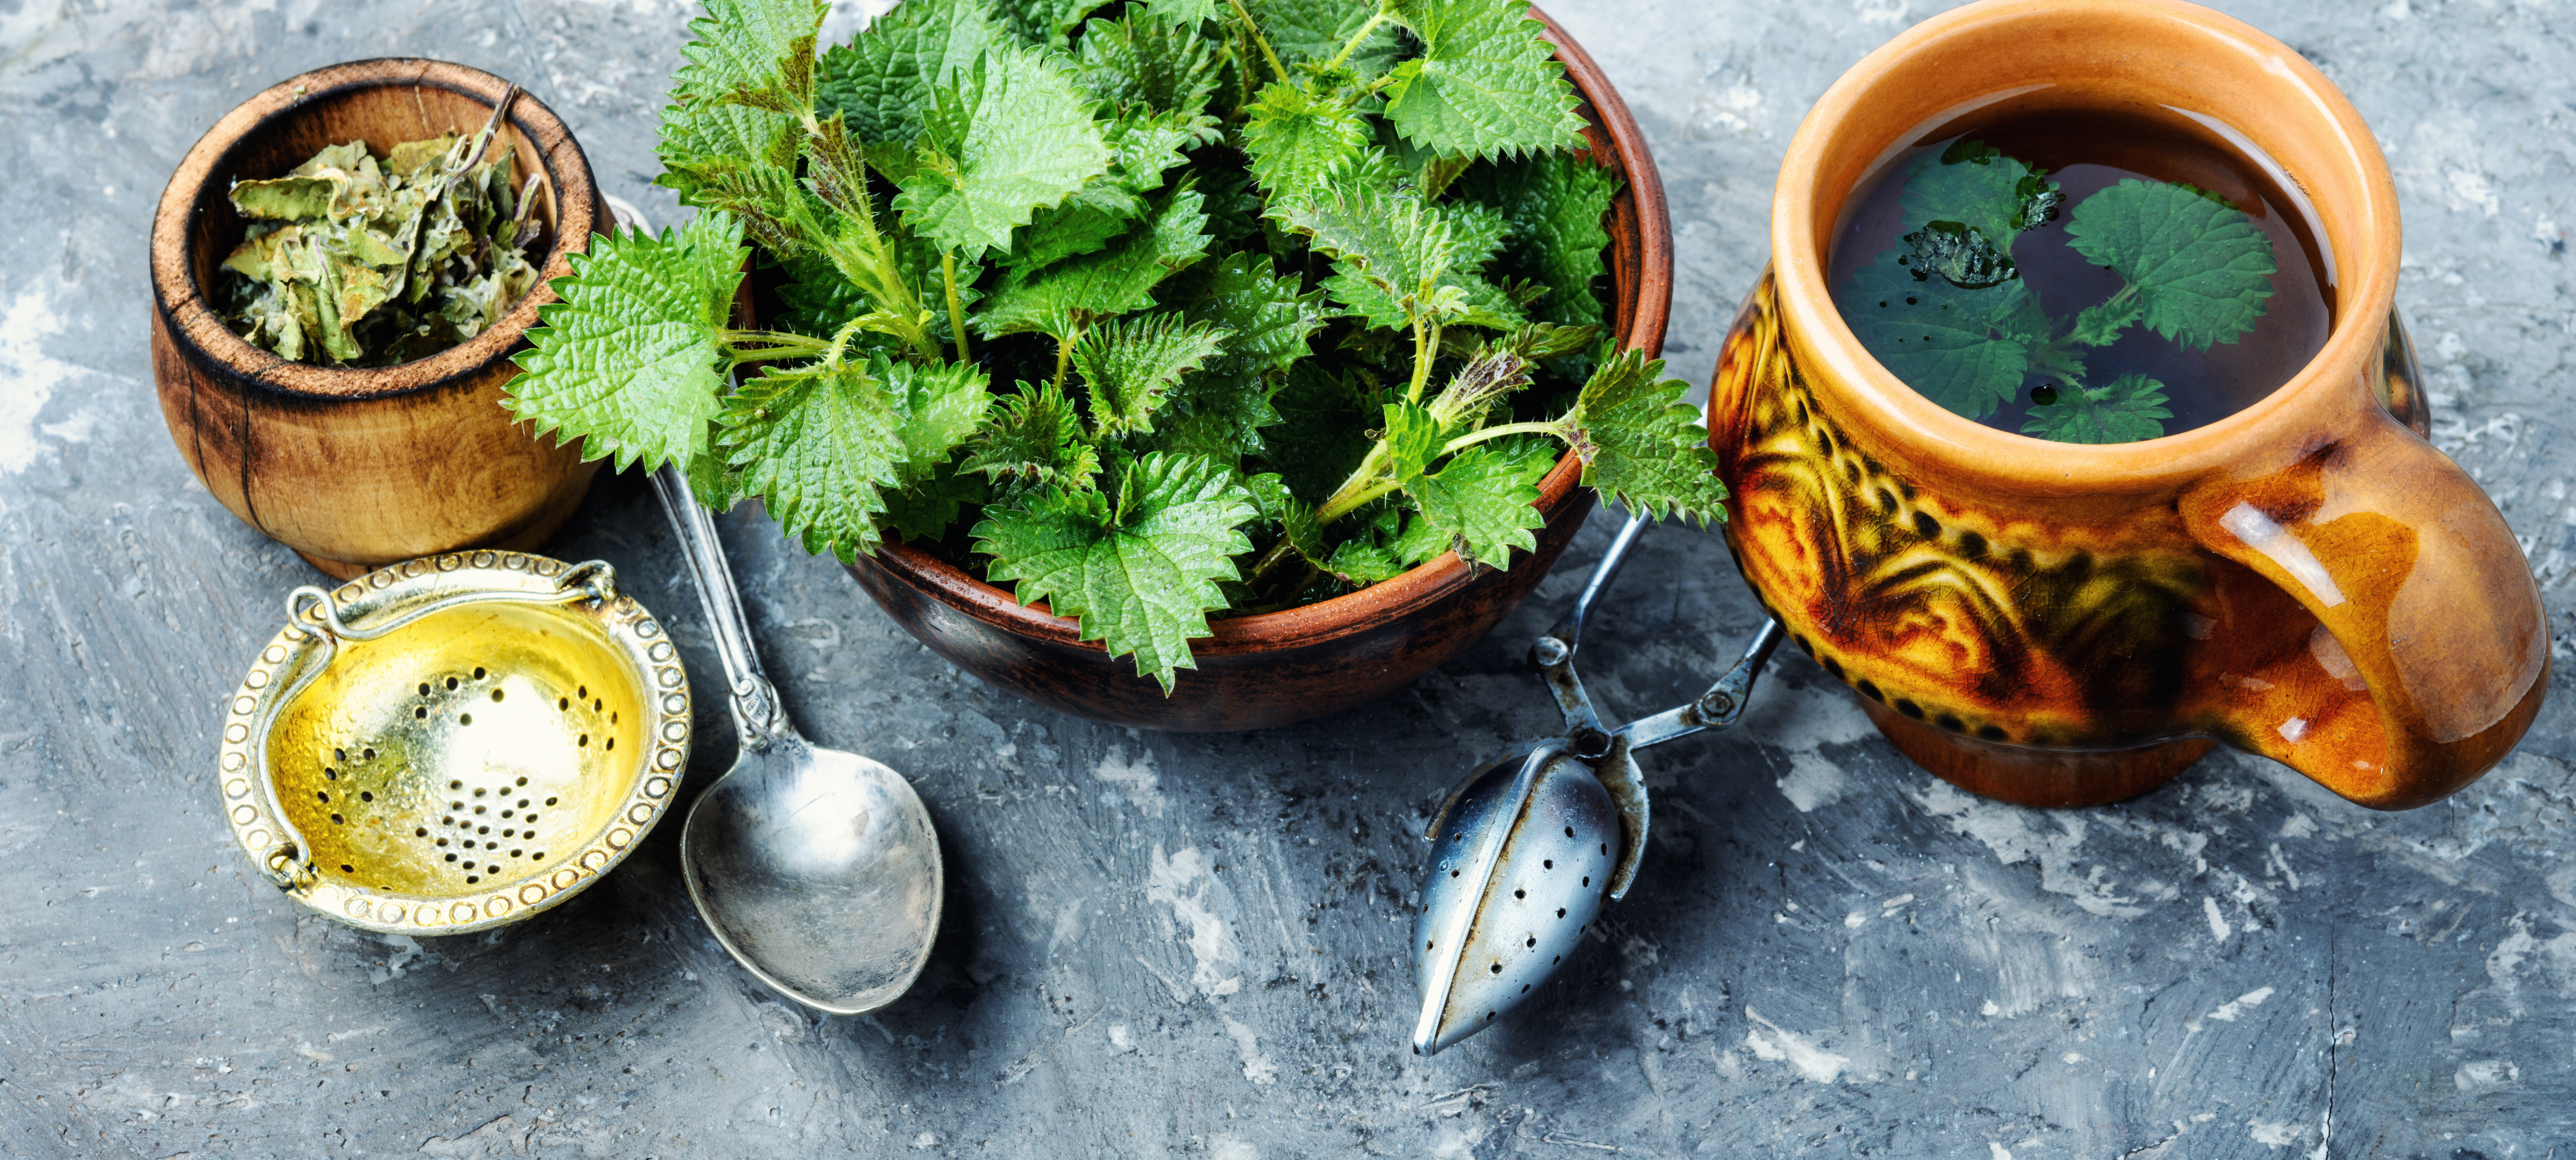 18 преимуществ крапивы для здоровья и рецепт приготовления чая из крапивы